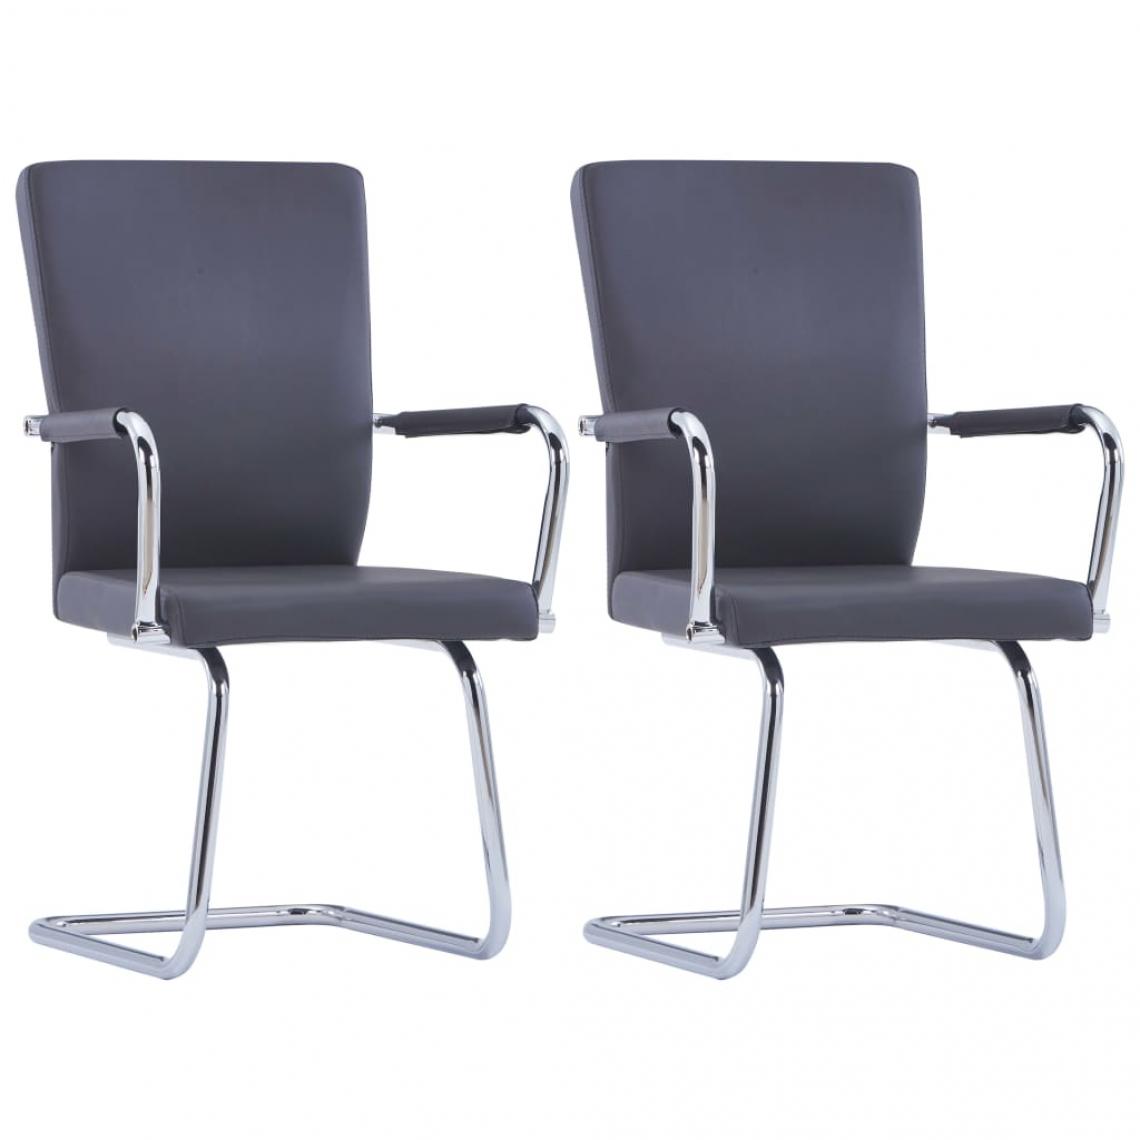 Decoshop26 - Lot de 2 chaises de salle à manger cuisine cantilever design moderne similicuir gris CDS020332 - Chaises